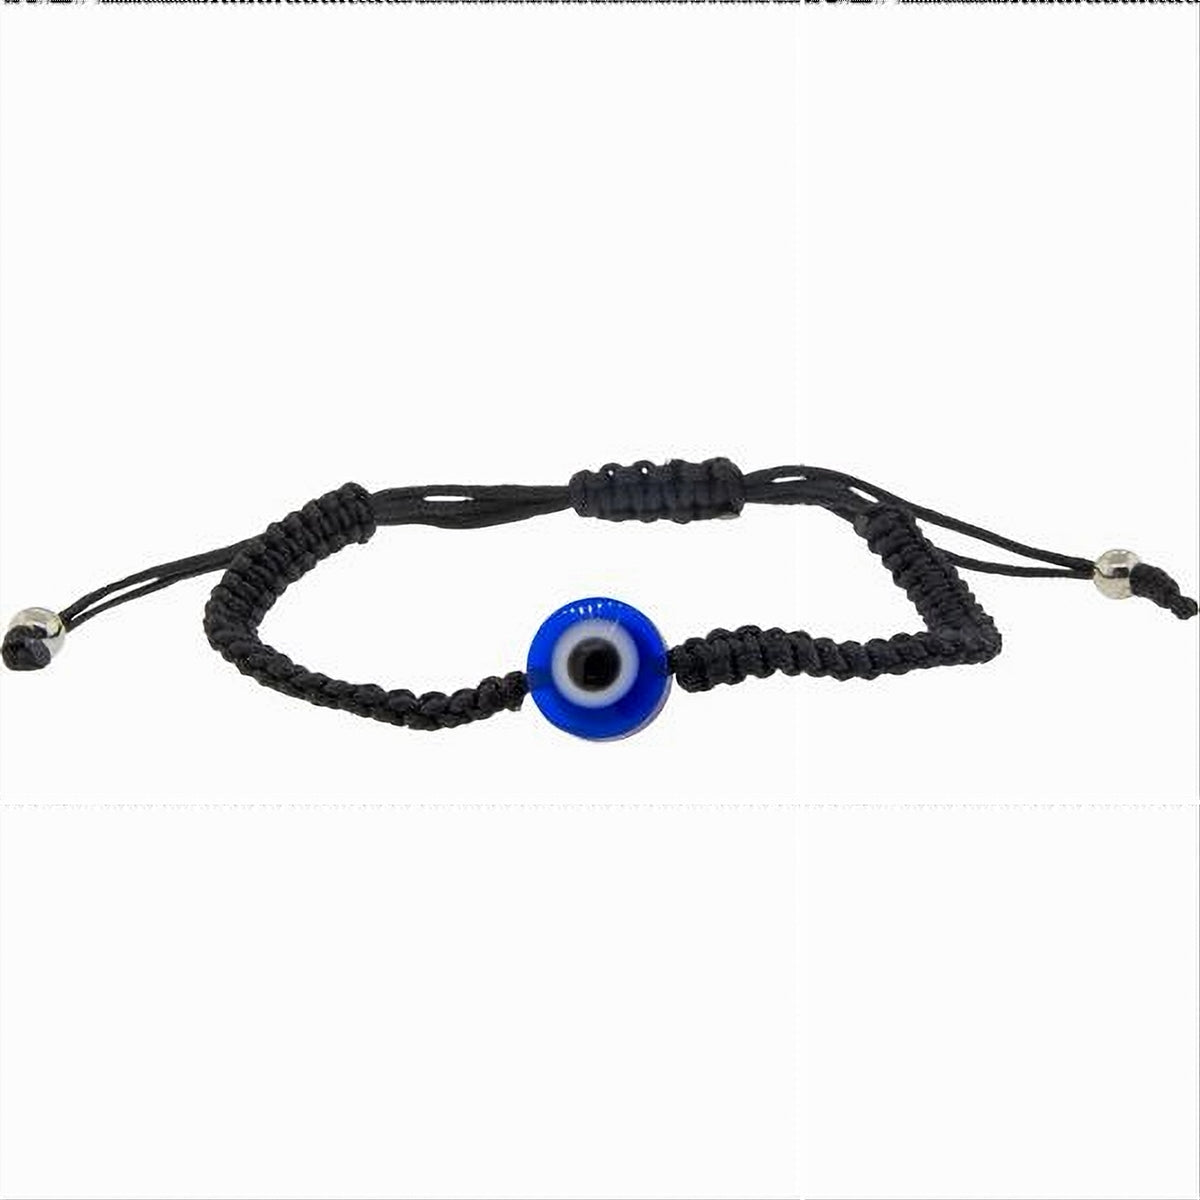 Evil Eye Bracelet - Adjustable Black Cord